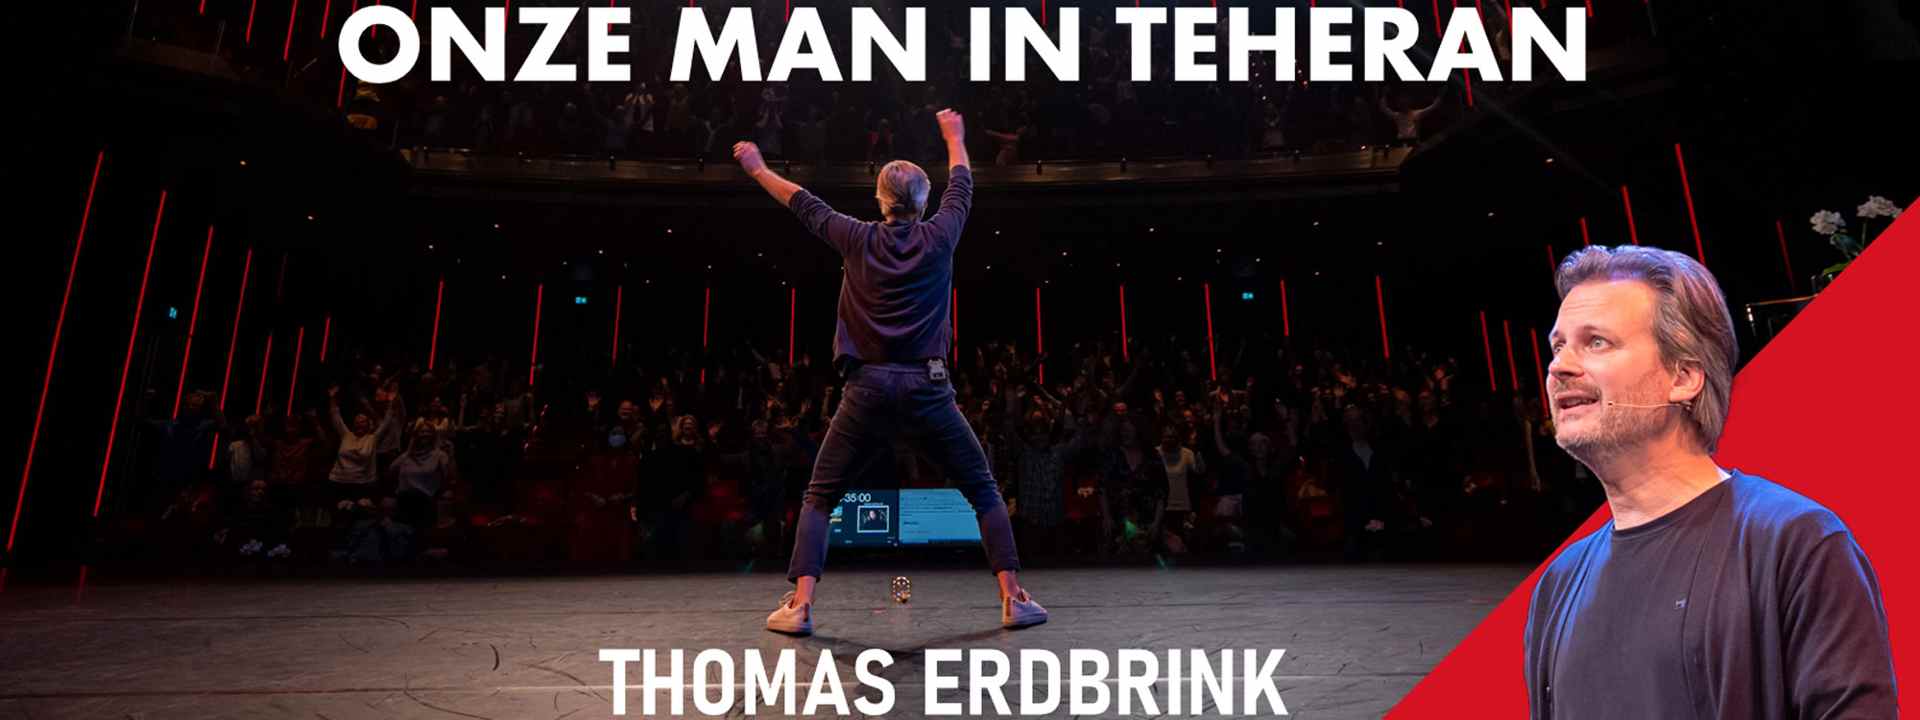 Onze man in Teheran – Theatertour Thomas Erdbrink